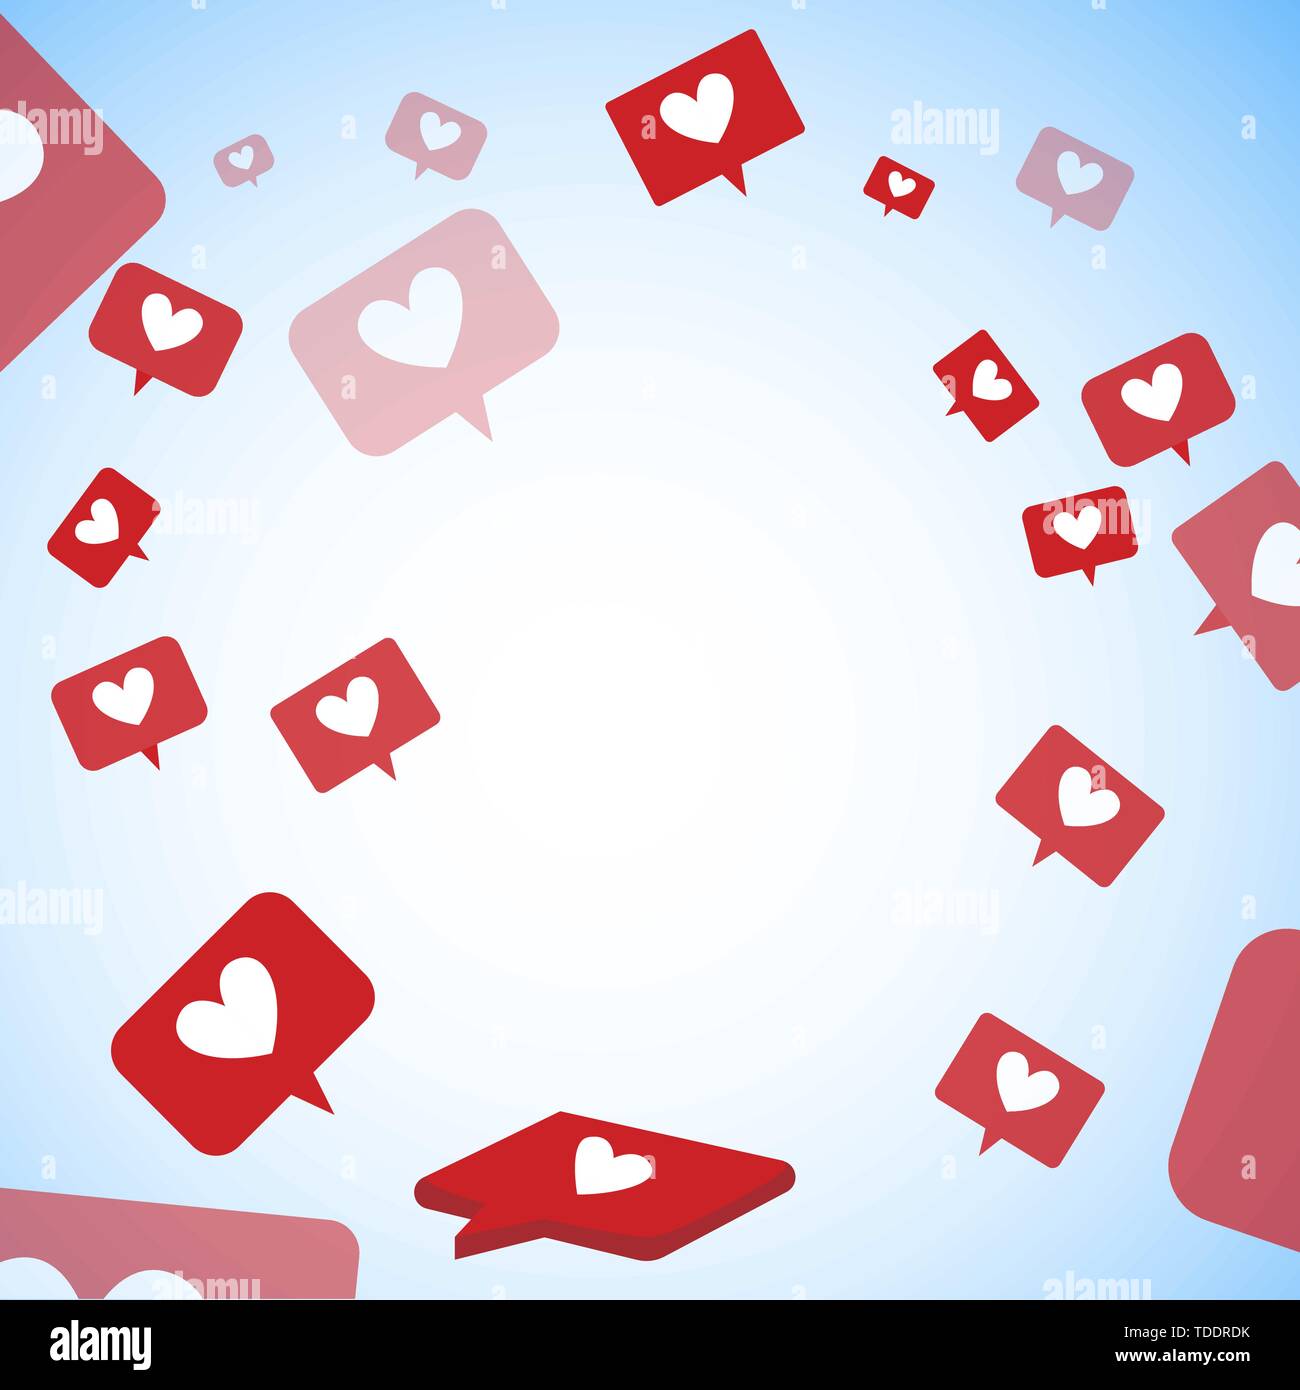 Fliegen wie und Herz. Raum der sozialen Medien. Liebe Medien, überschüssige Antwort symbol Herz, viele Zeichen und Symbole. Vector Illustration Stock Vektor